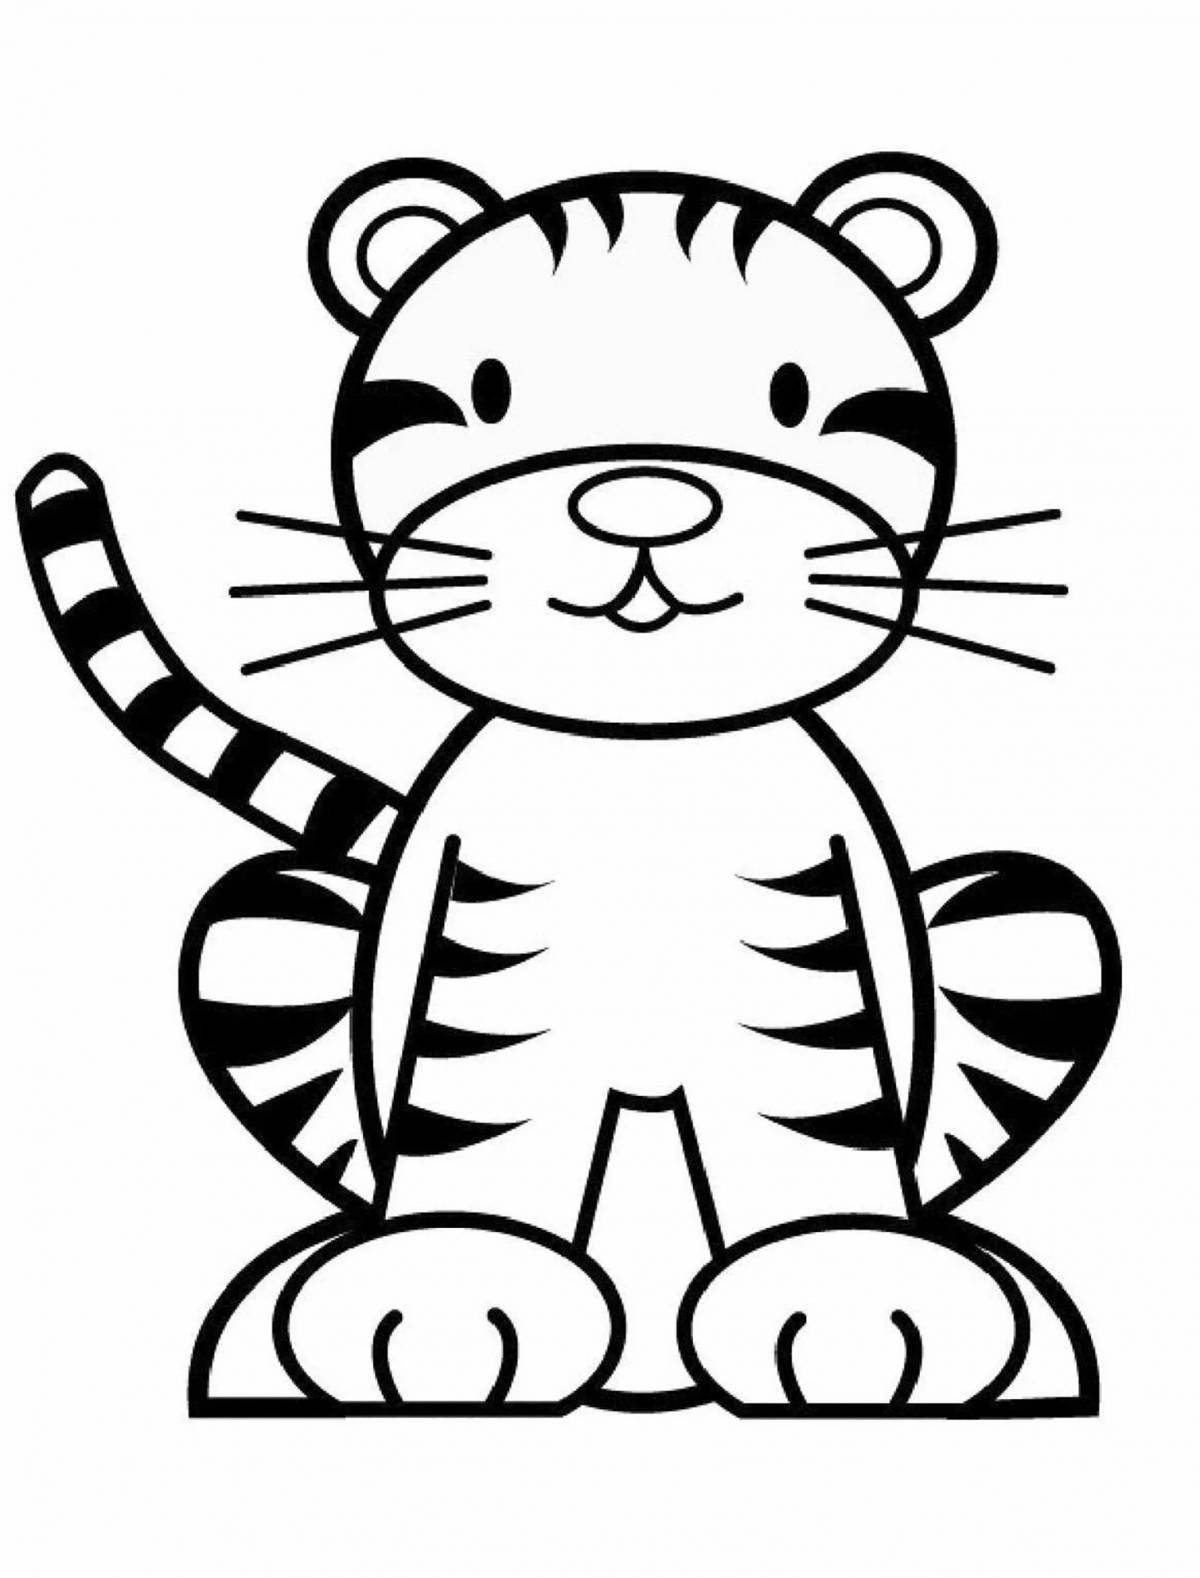 Inspiring tiger drawing for kids